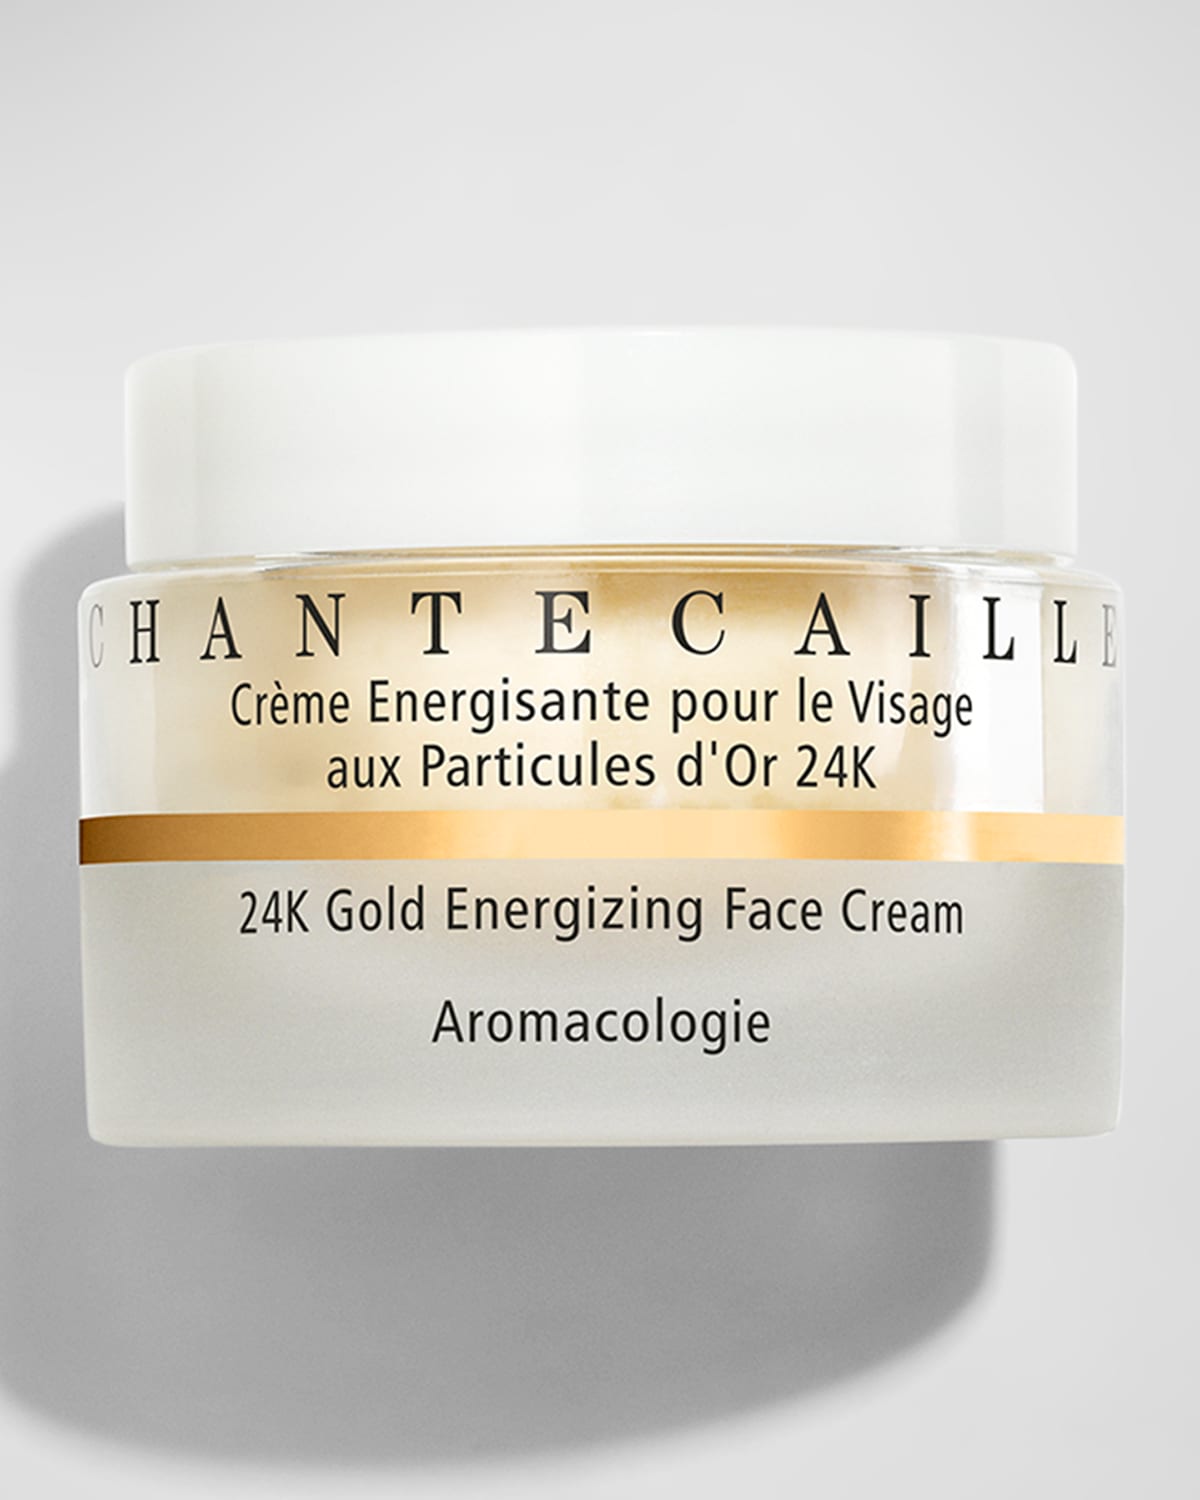 1.7 oz. 24K Gold Energizing Face Cream